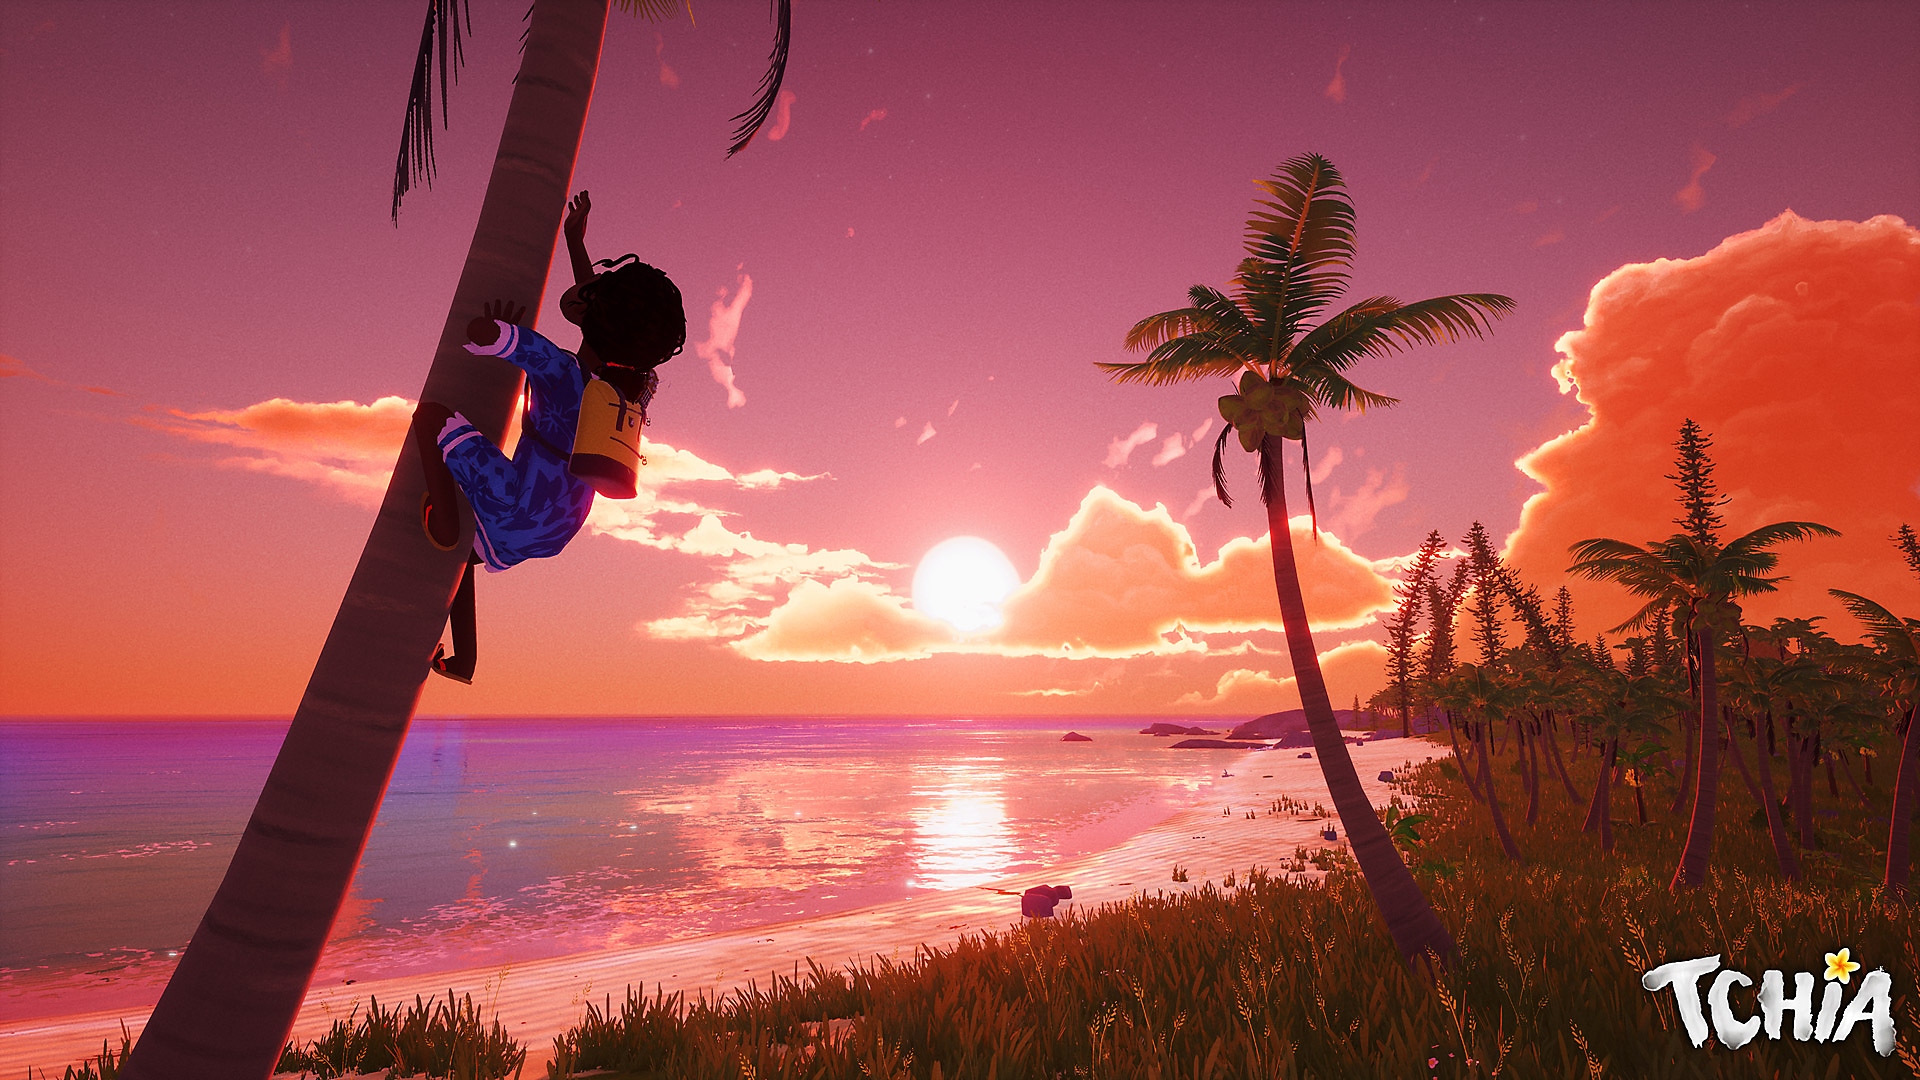 Tchia-screenshot van het hoofdpersonage die in een boom klimt, met op de achtergrond een prachtige zonsondergang